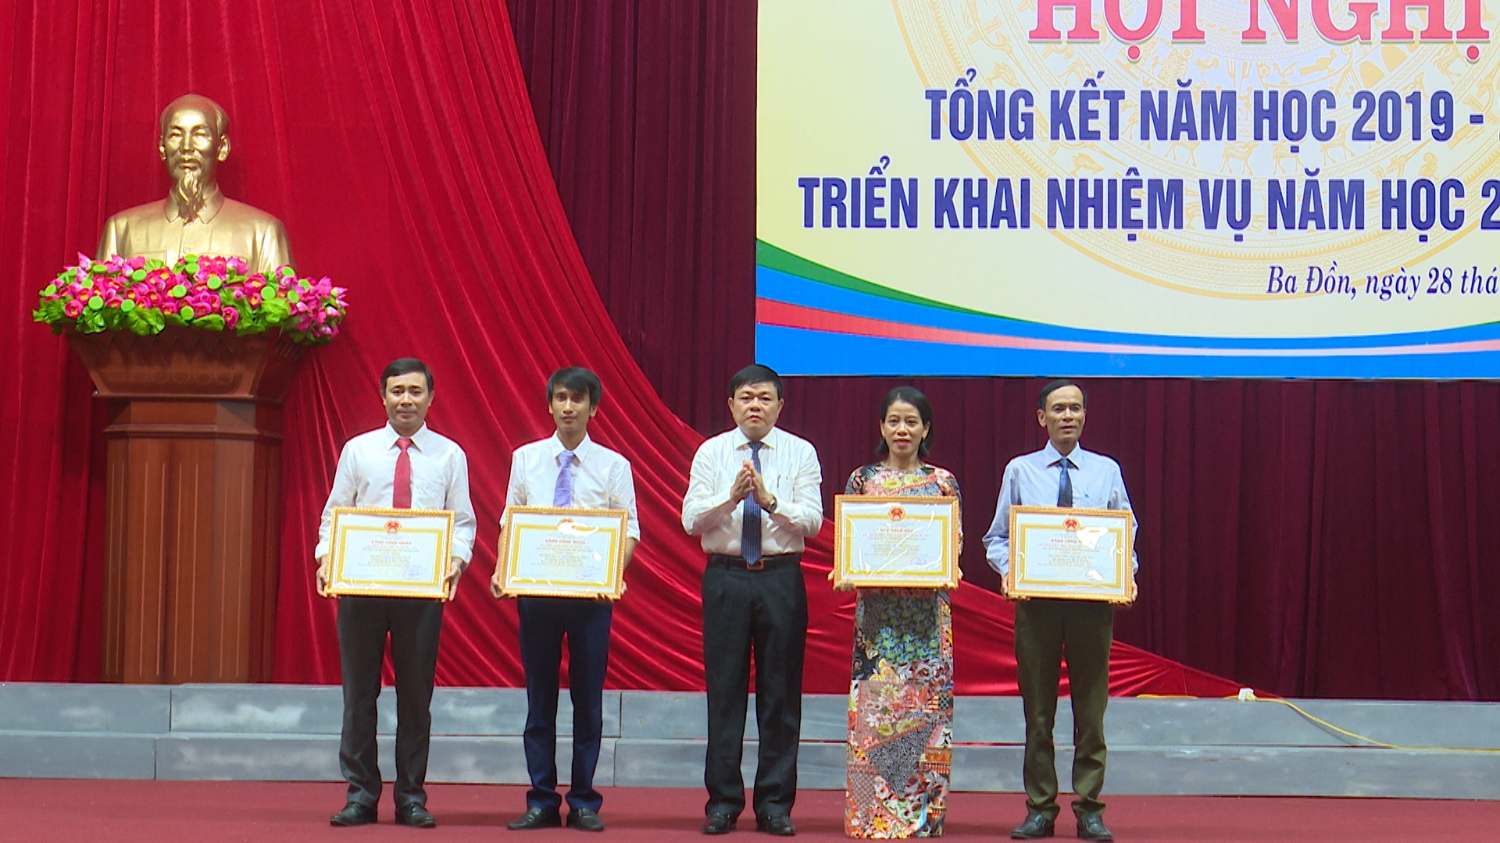 Đồng chí Đoàn Minh Thọ Phó Bí thư Thị ủy, Chủ tịch UBND thị xã trao giấy chứng nhận trường đạt chuẩn Quốc gia cho các trường đạt chuẩn trong năm 2020